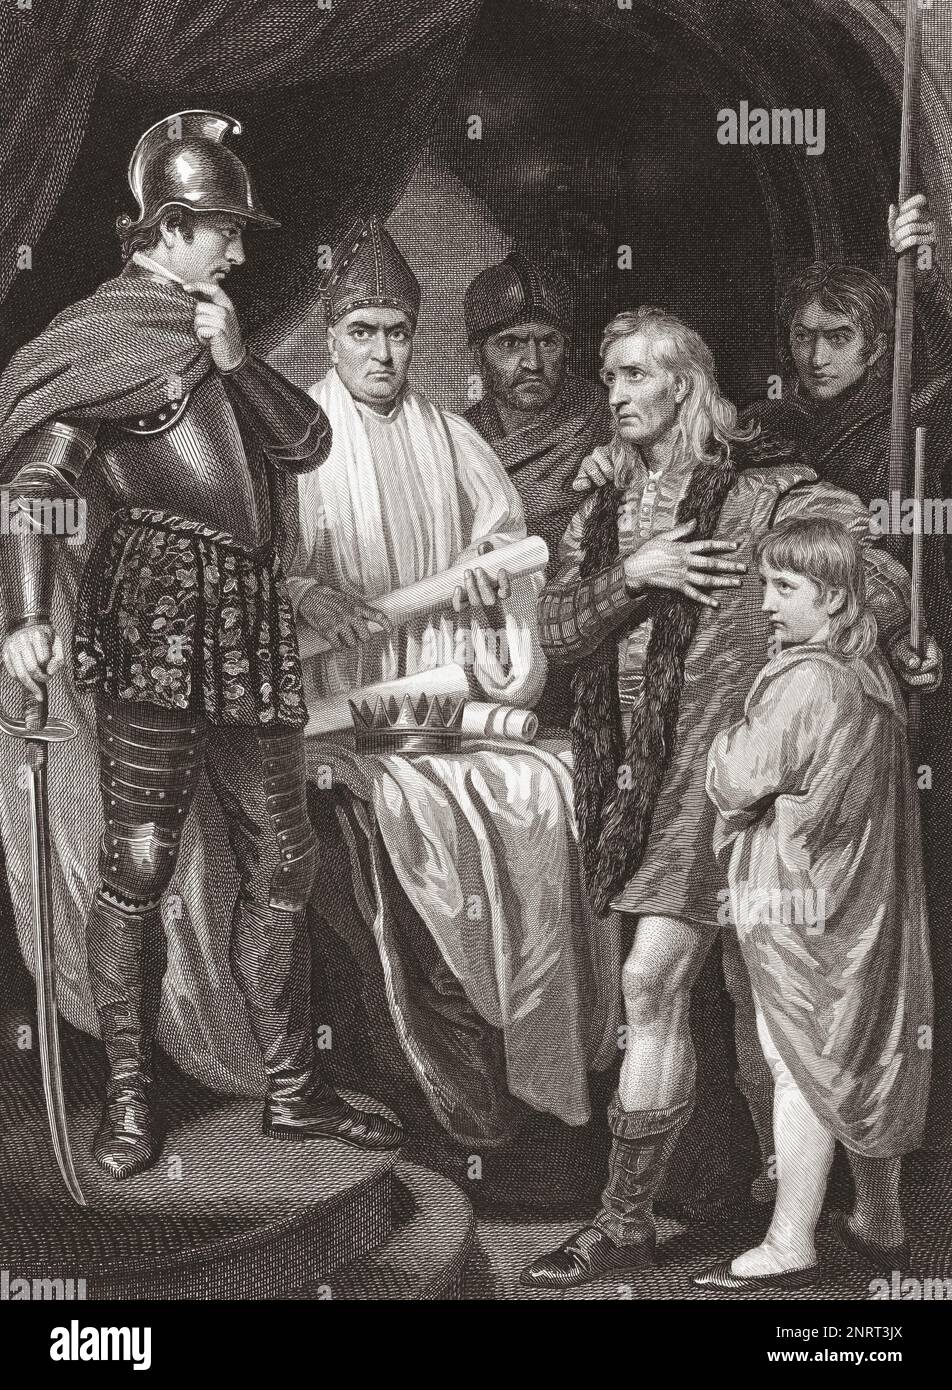 John Balliol, König von Schottland, übergibt seine Krone Edward I. von England. 10. Juli 1296. Nach einem Abdruck von James Parker aus dem Gemälde von John Opie, das ursprünglich in der von 1793 bis 1806 erschienenen Robert Bowyer's Historic Gallery zu sehen war. Stockfoto